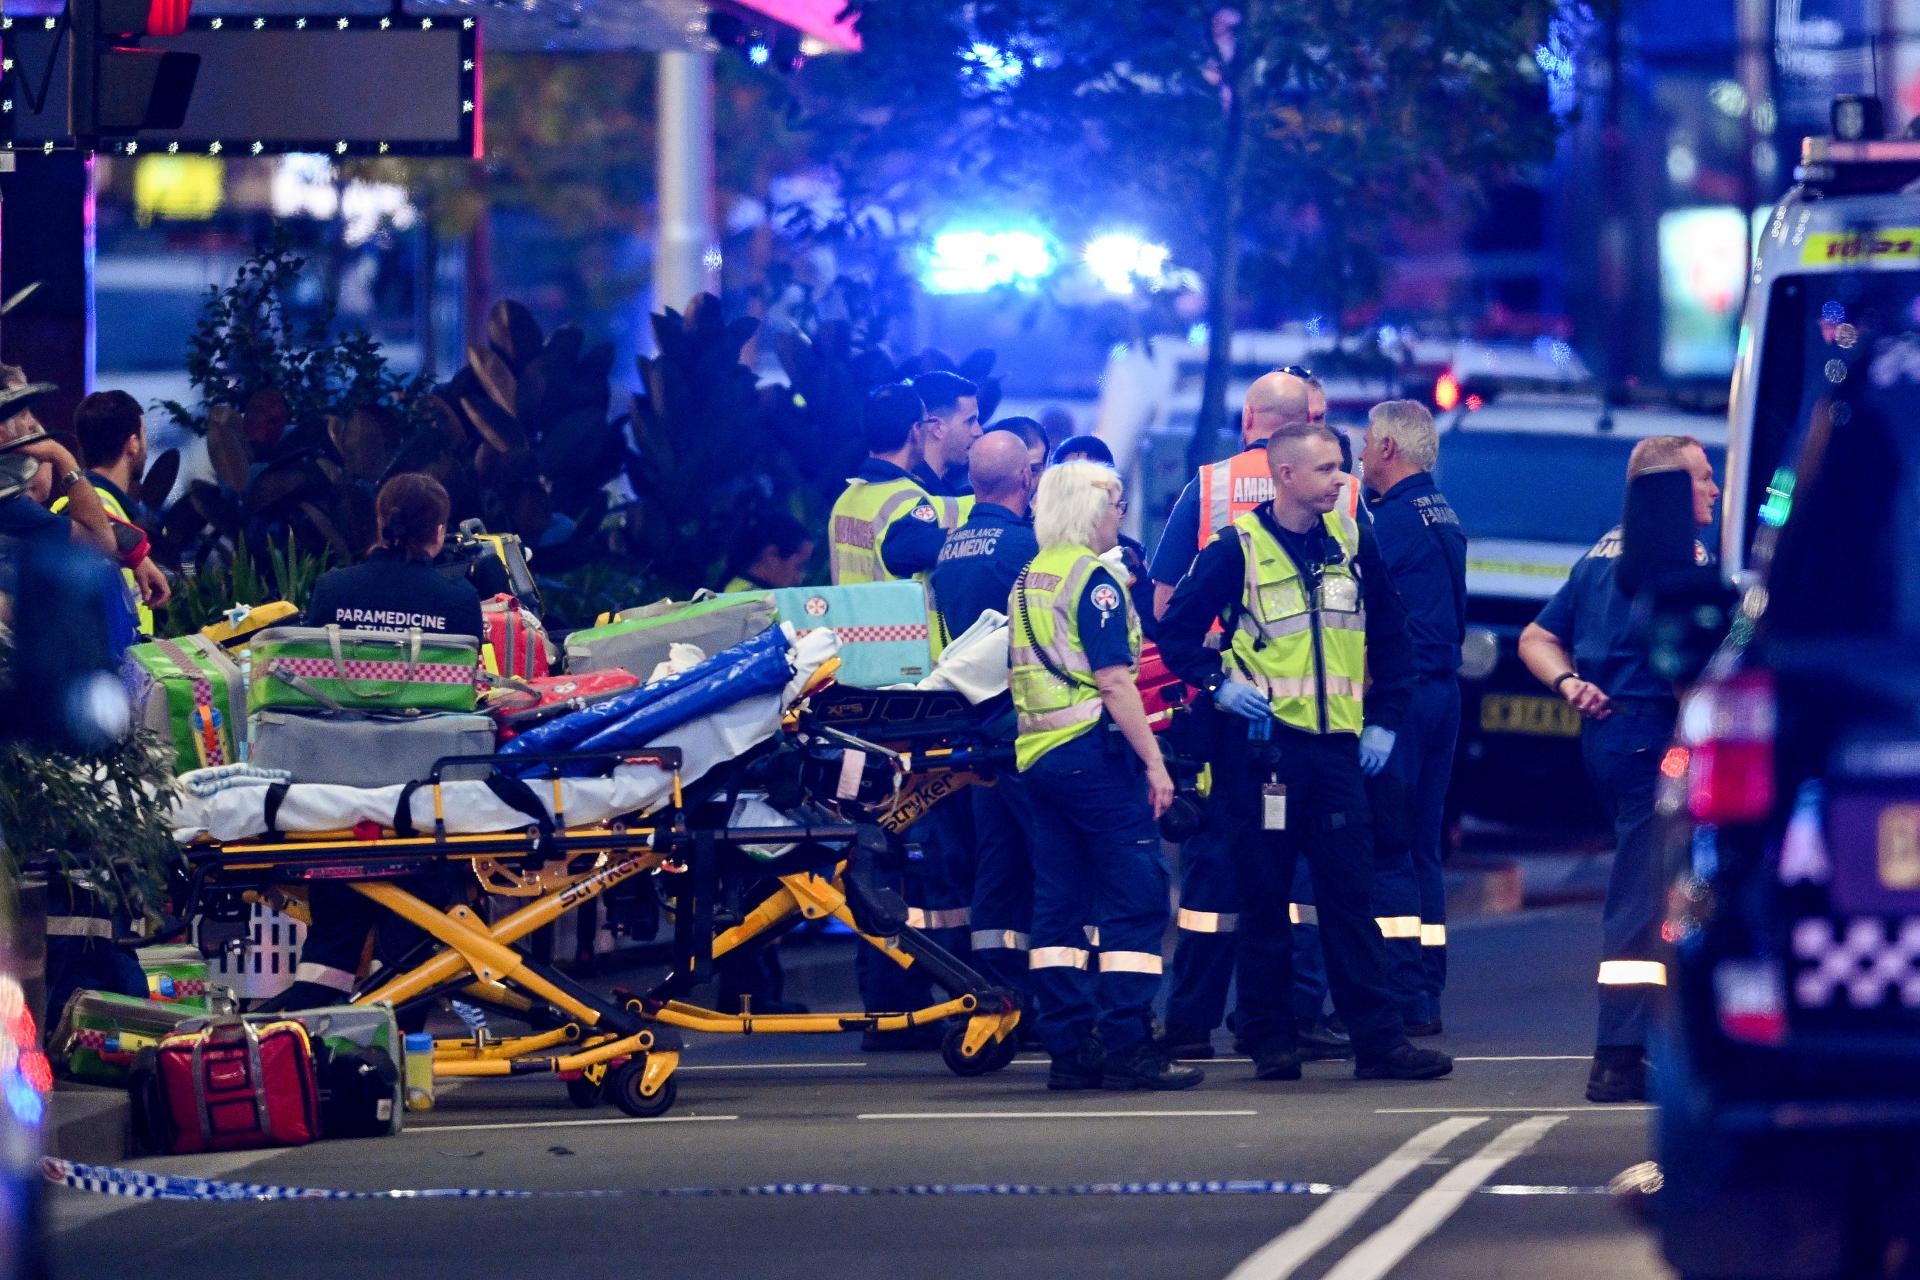 Austrálsky premiér vyjadril zdesenie nad útokom v Sydney, polícia nevylučuje terorizmus